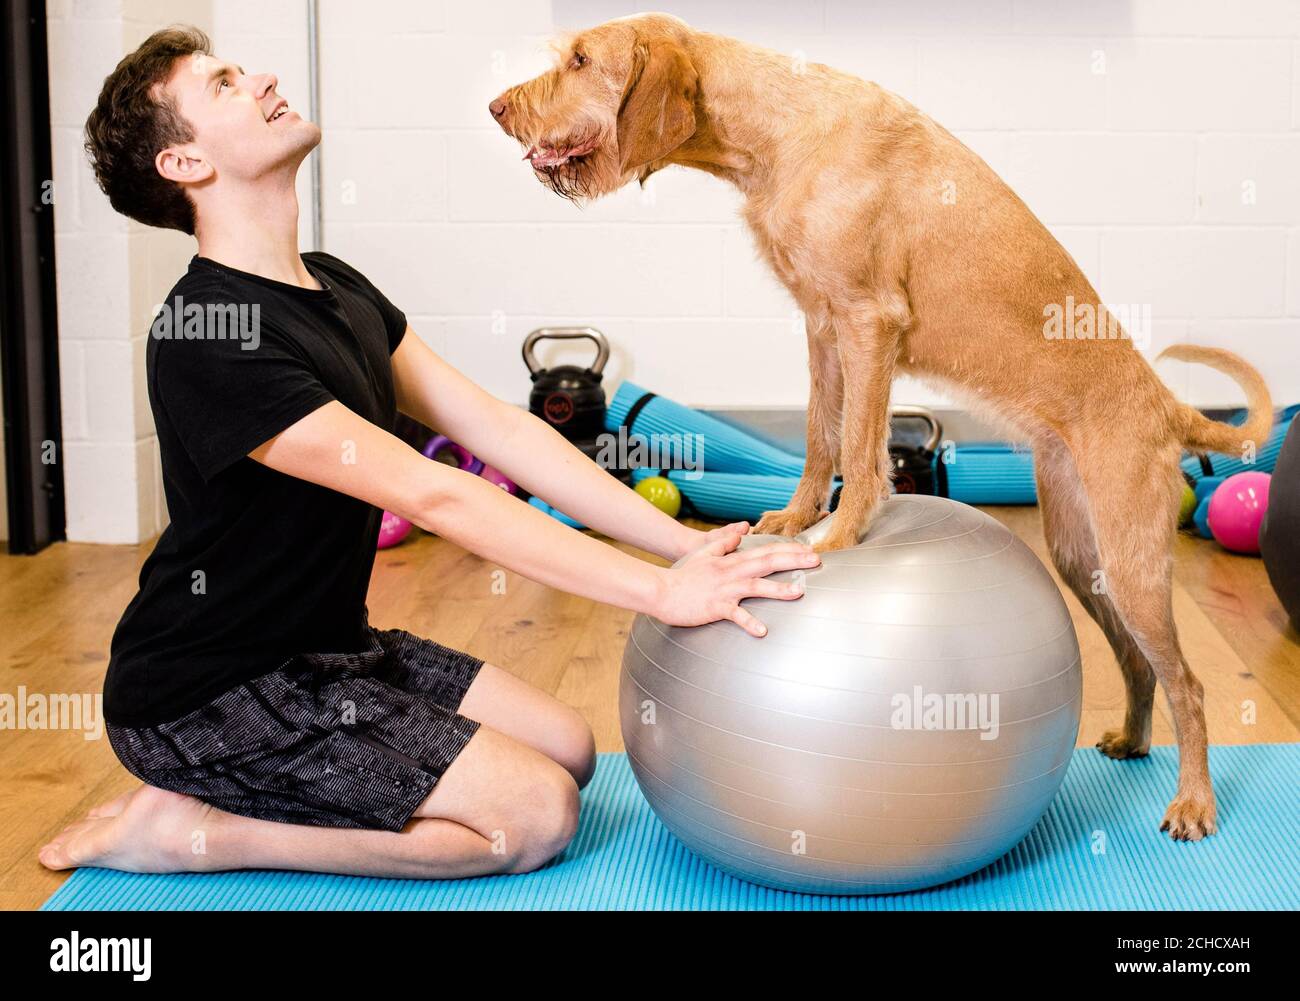 Paul Spears pratique le yoga avec son chien vizsla Maple alors qu'Argos lance la Maison de la condition physique, en s'adressant à de nouvelles tendances telles que 'Petscercise', qui selon les recherches est la dernière séance d'entraînement de choix. Banque D'Images